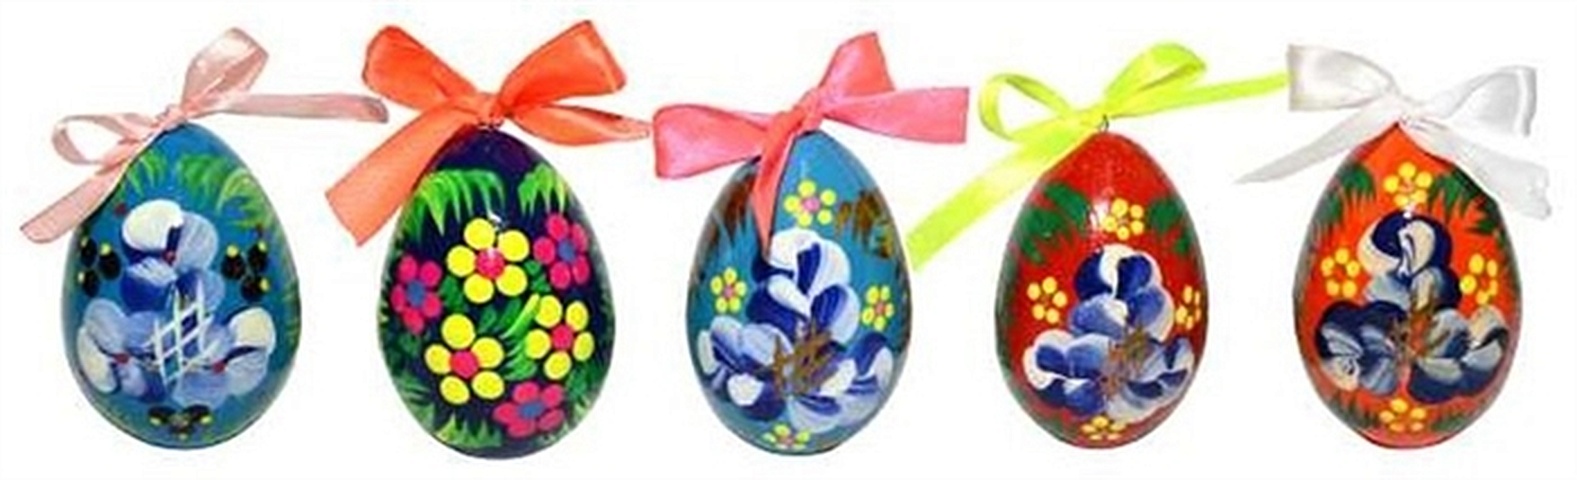 сувенир акм яйцо малое цветочное с лентой 6 5 6см Сувенир, АКМ, Яйцо малое цветочное с лентой 6*5*6см